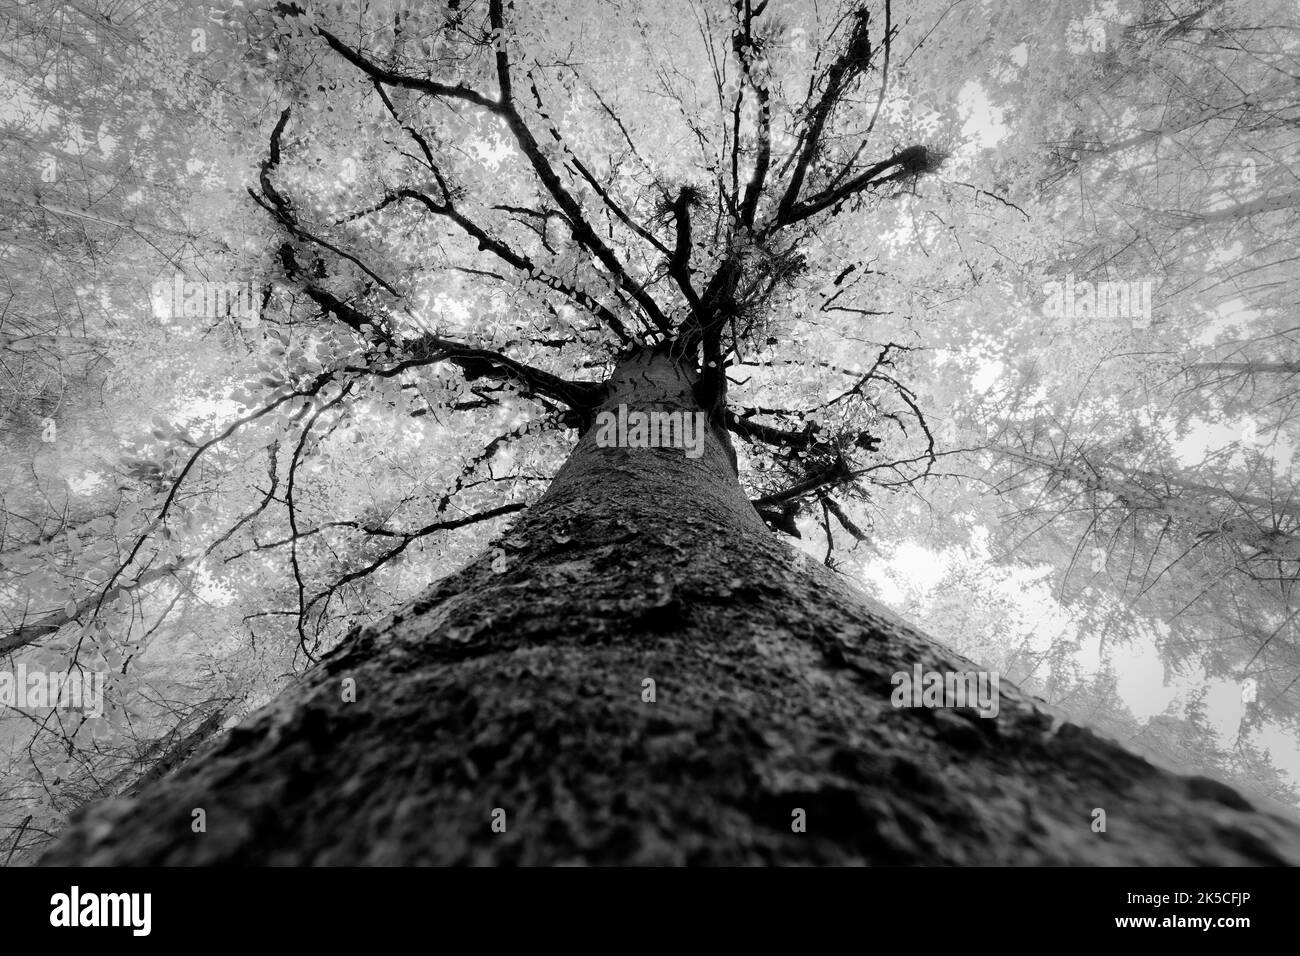 Tree, beech, tree trunk, from below, b/w Stock Photo